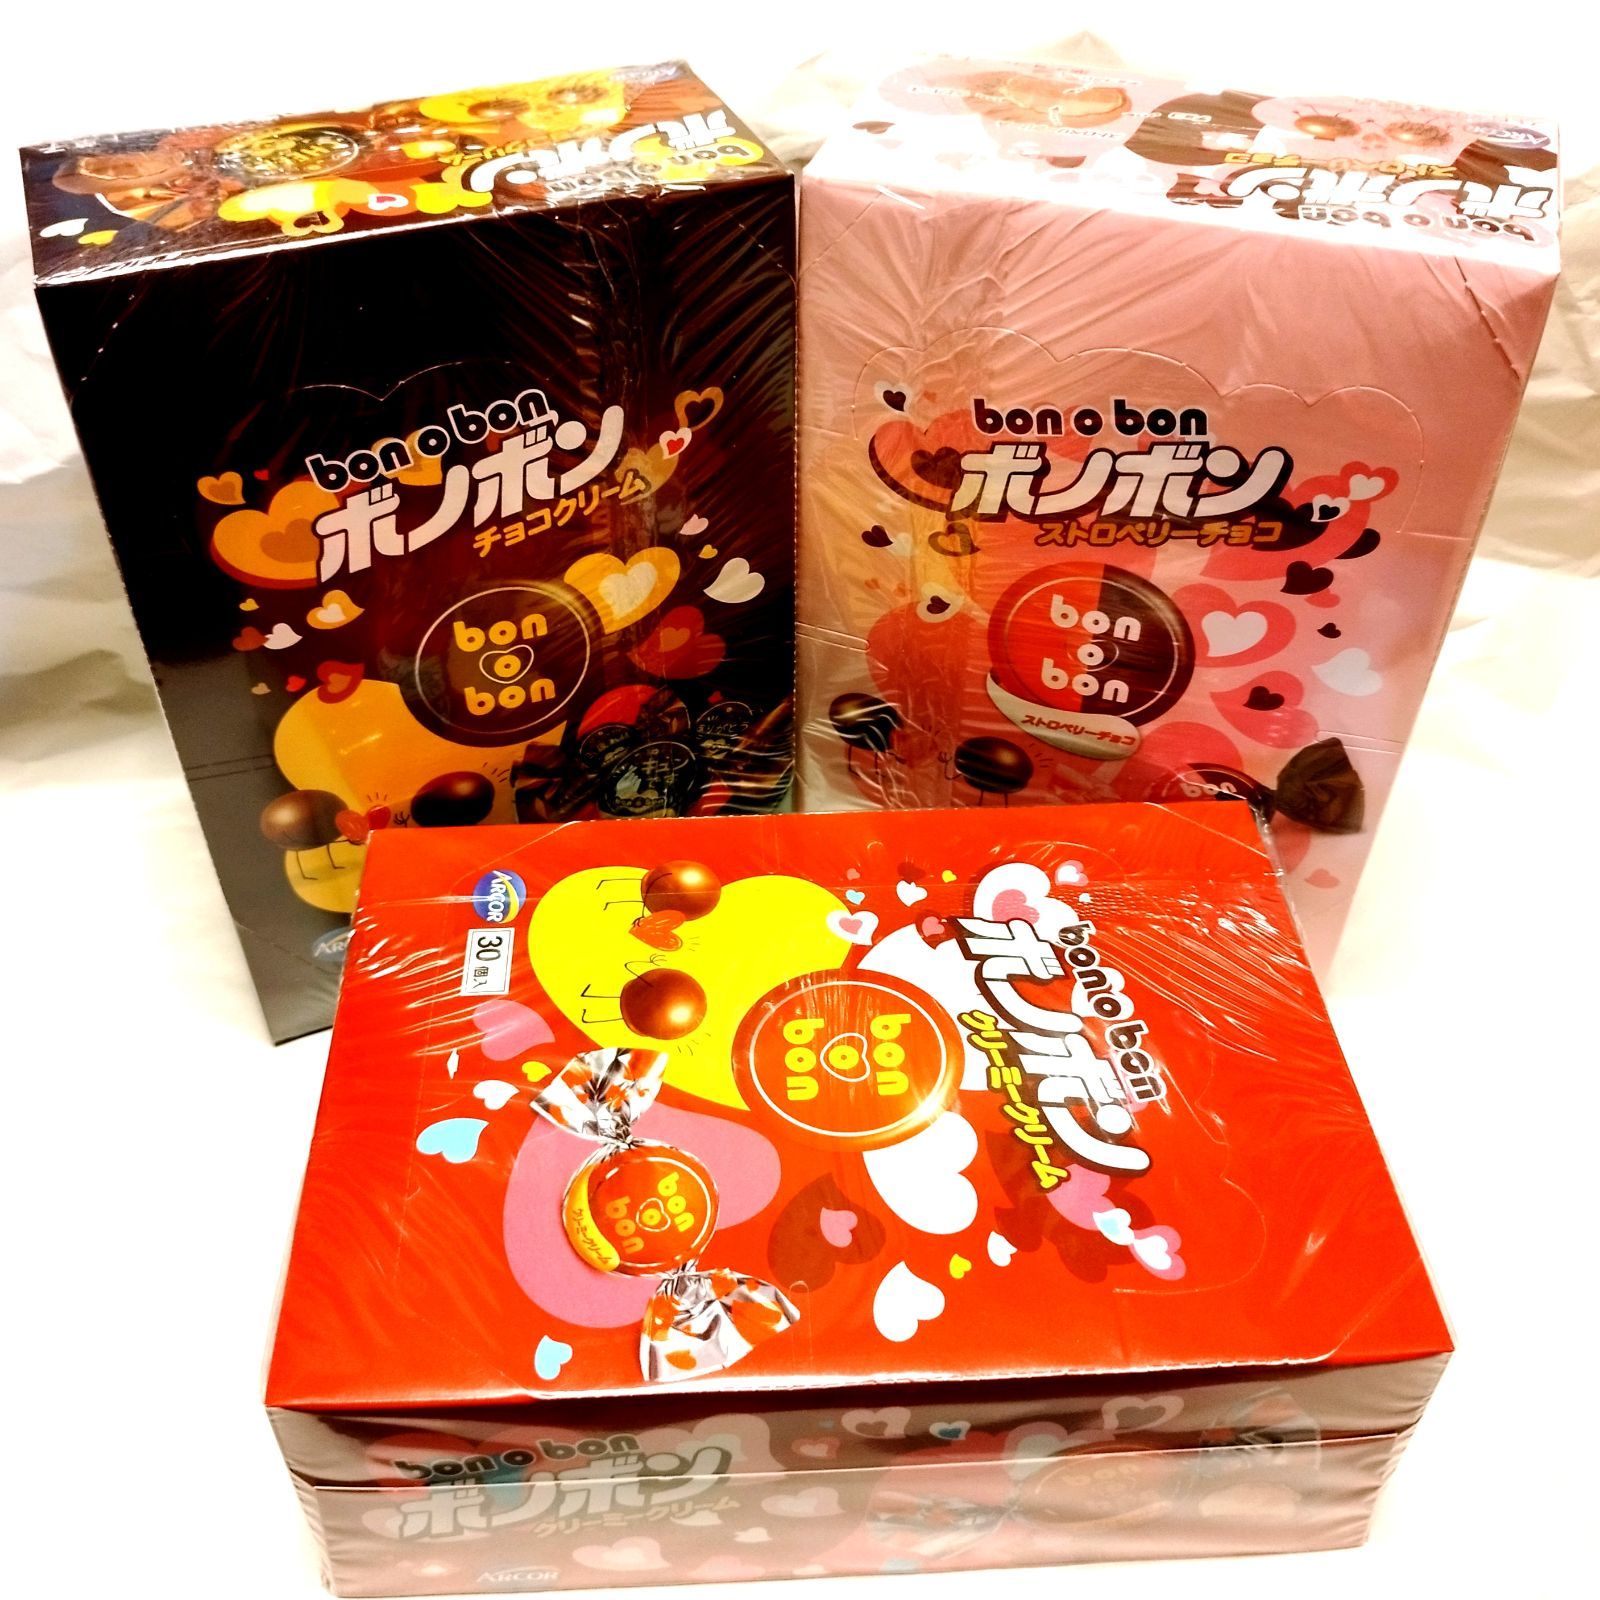 ボノボン チョコクリーム 1箱(30個入) モントワール bonobon - 菓子